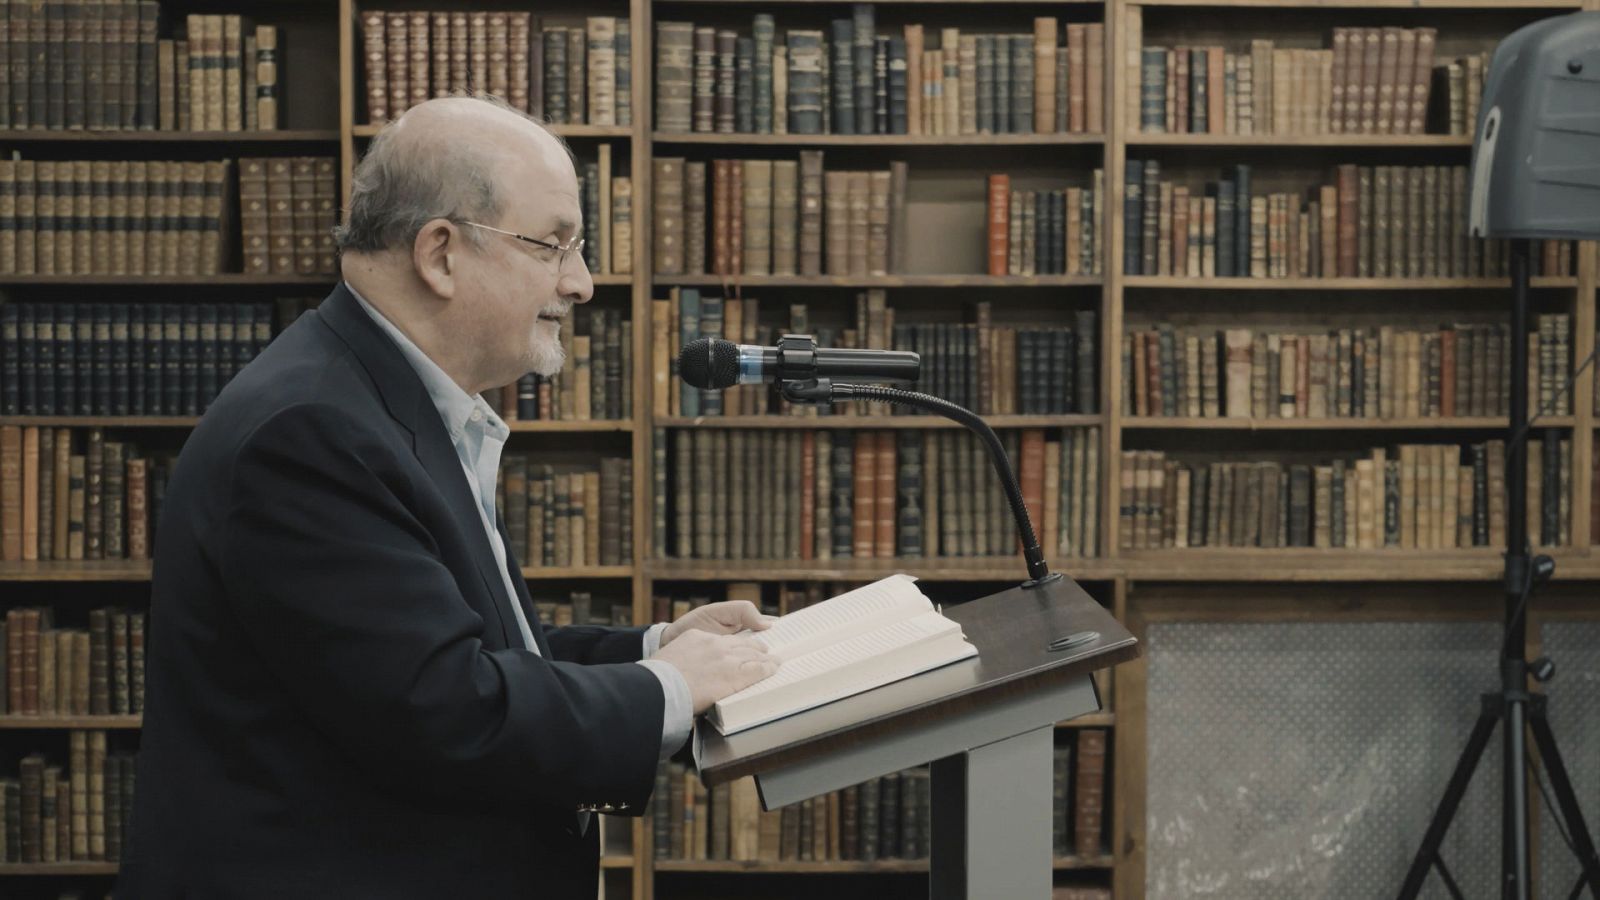 'La noche temática' estrena 'Salman Rushdiecon la muerte en los talones'